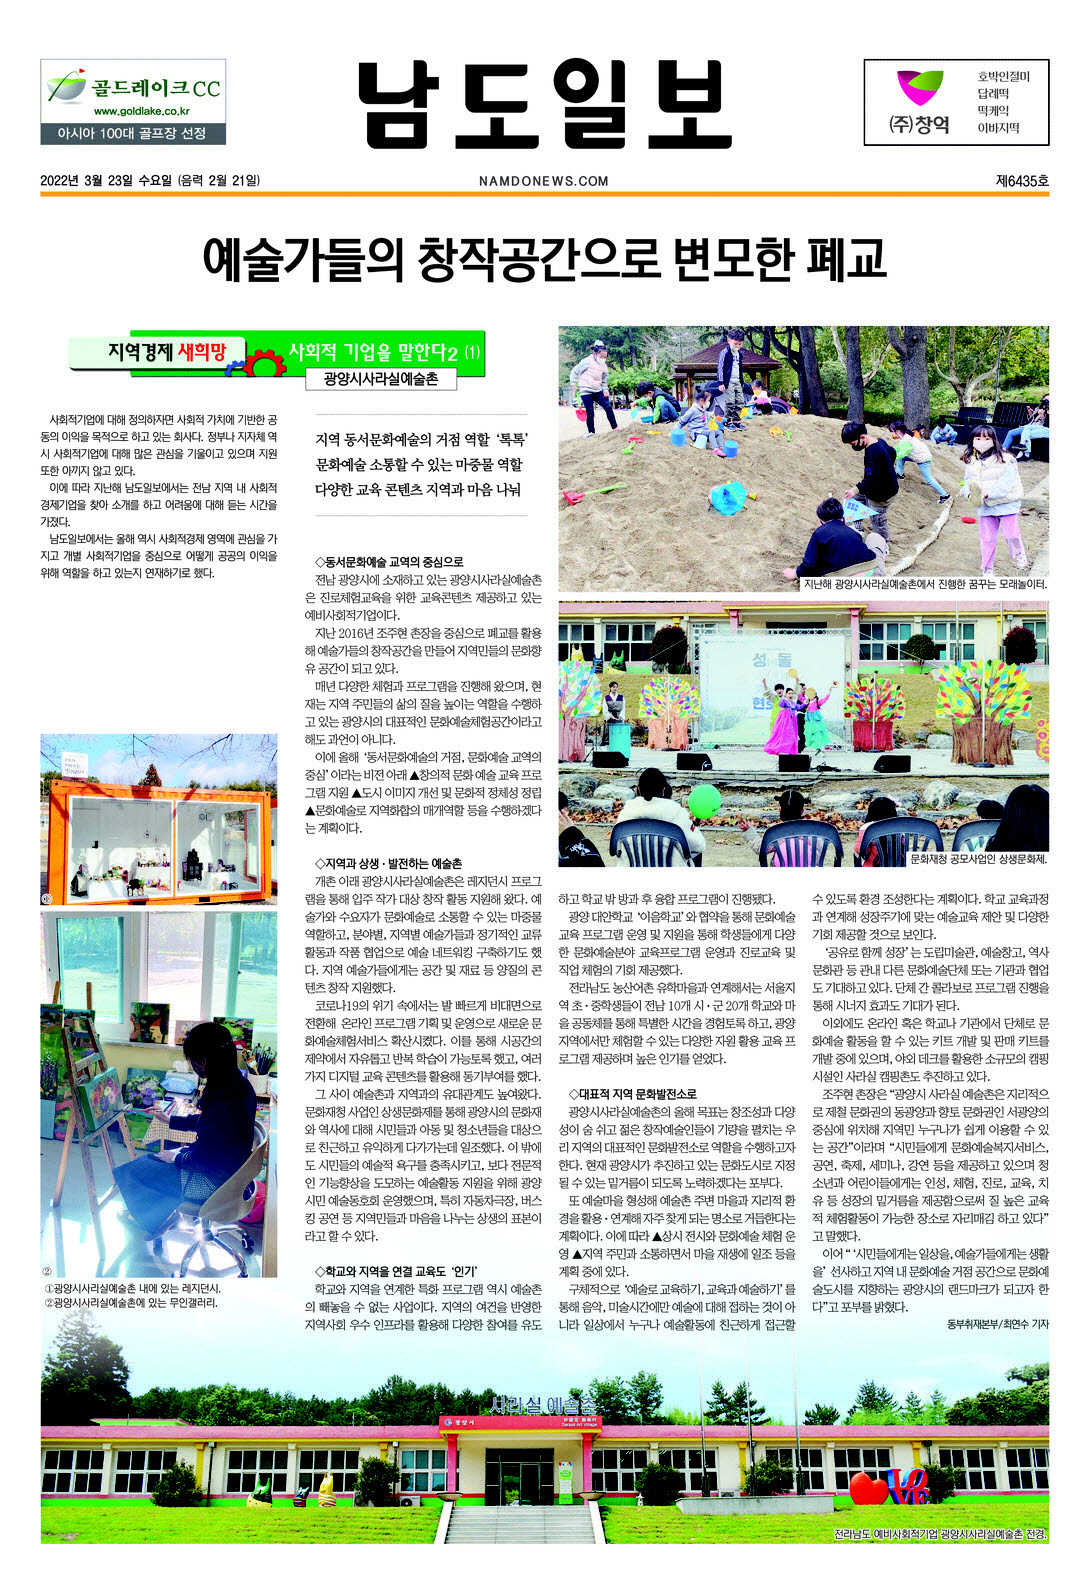 예술가들의 창작공간으로 변모한 폐교(남도일보)